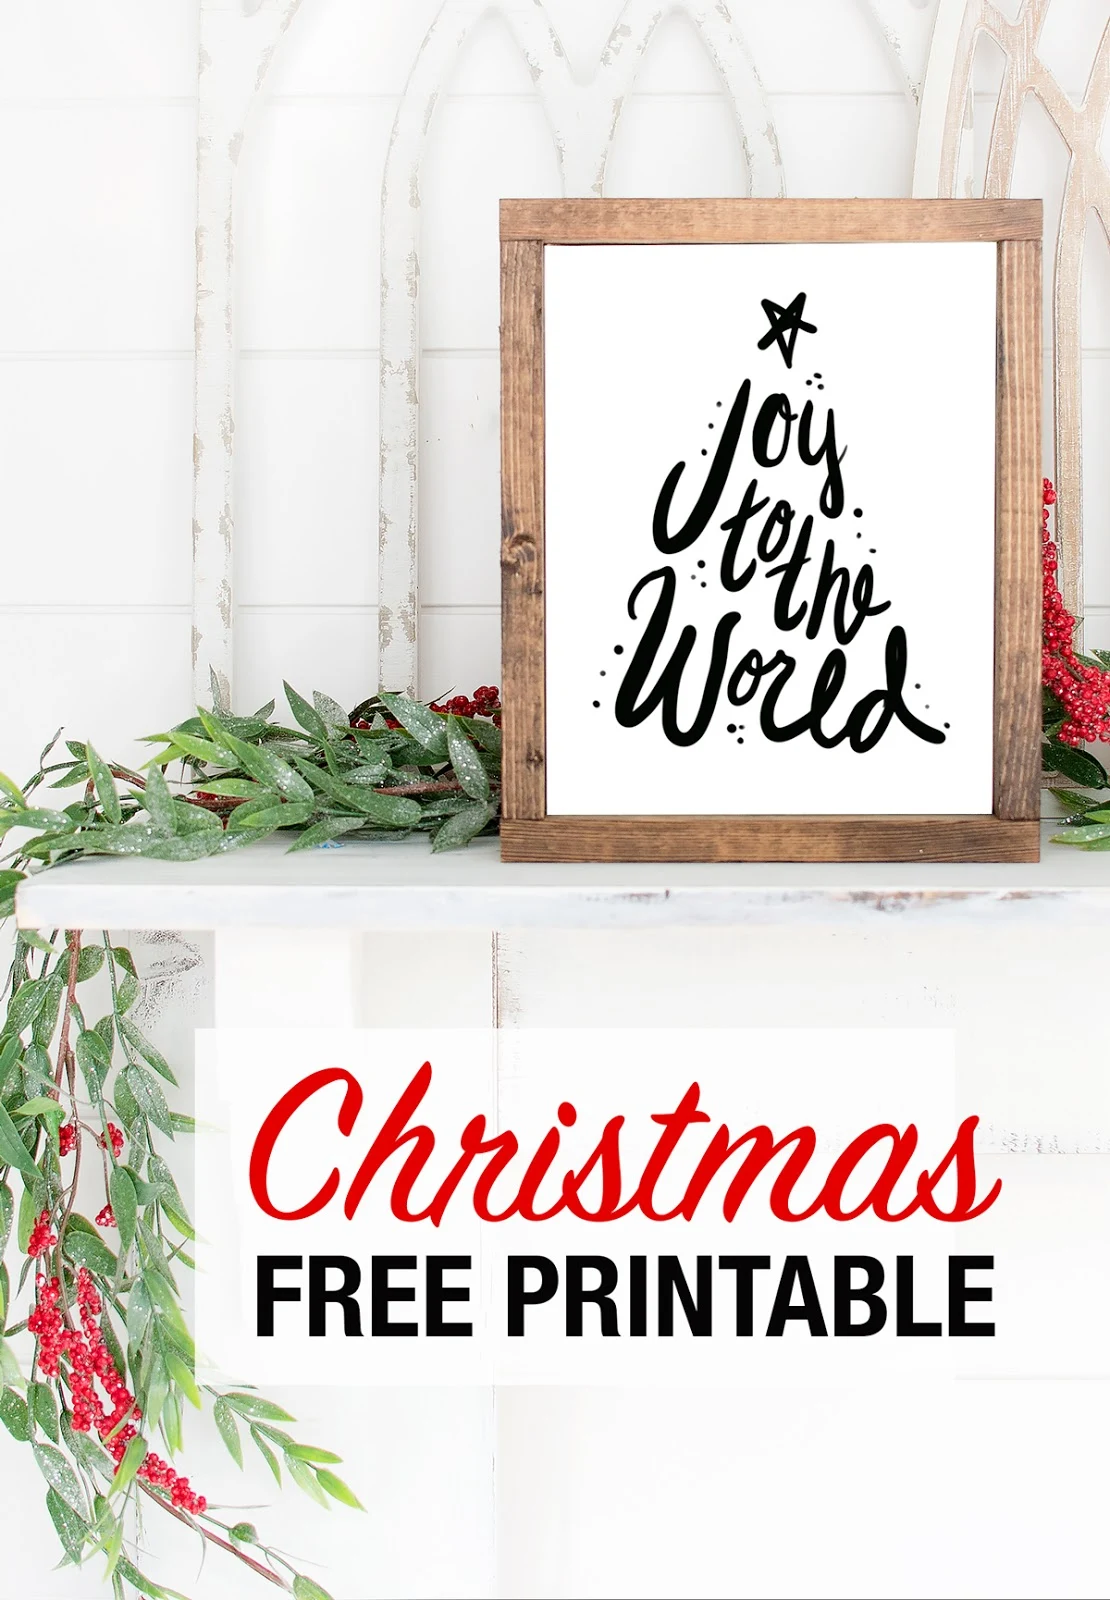 Joy to the world free printable